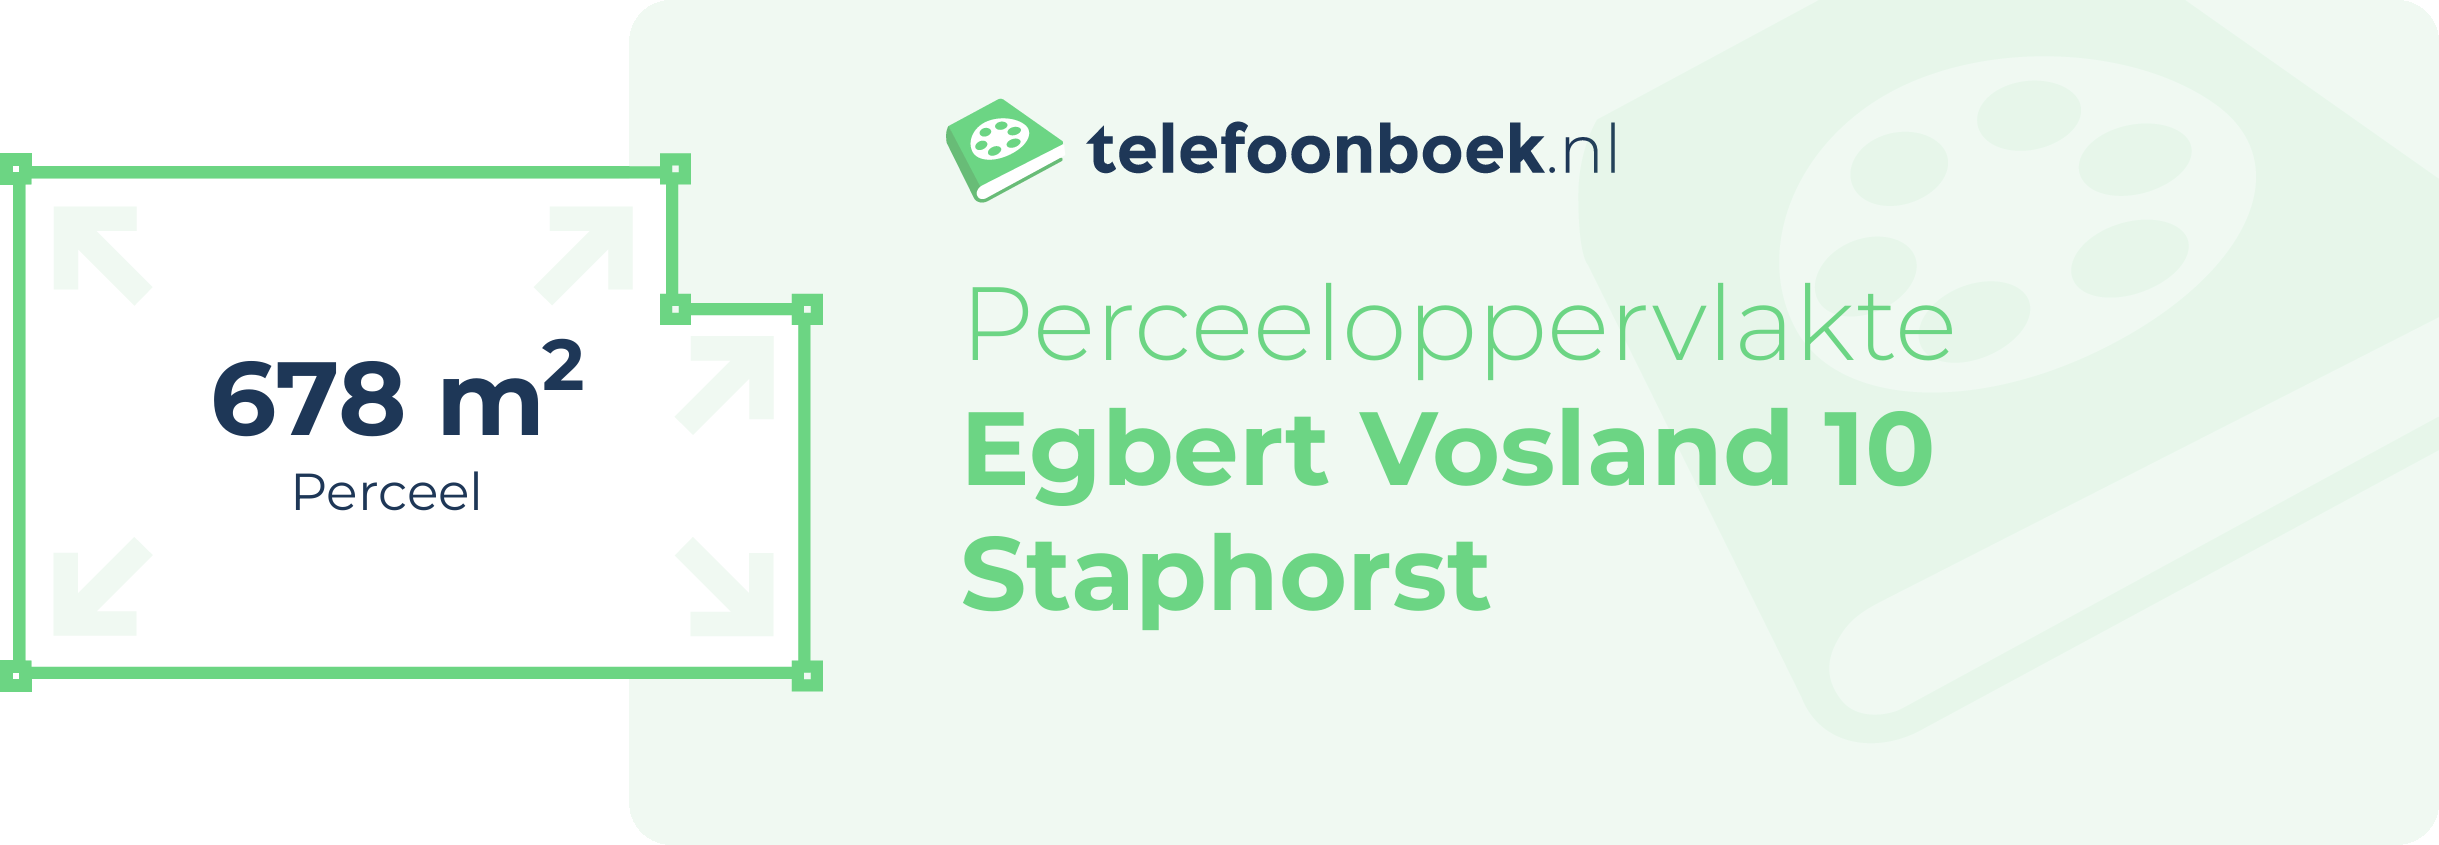 Perceeloppervlakte Egbert Vosland 10 Staphorst